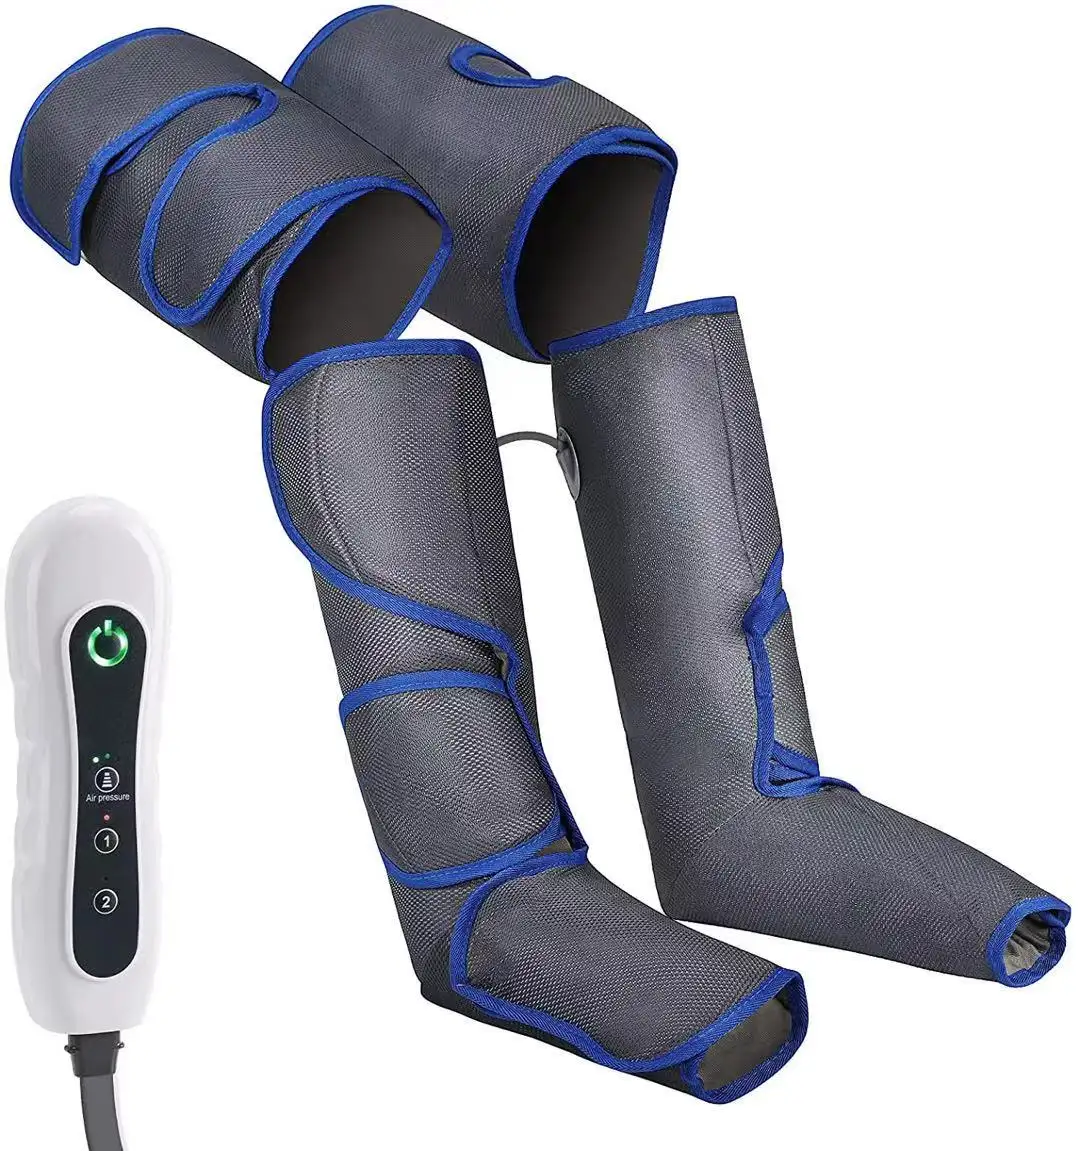 पैर मालिश, हवा परिसंचरण के लिए संपीड़न बछड़ा पैर जांघ मालिश, अन्य घरेलू चिकित्सा उपकरणों